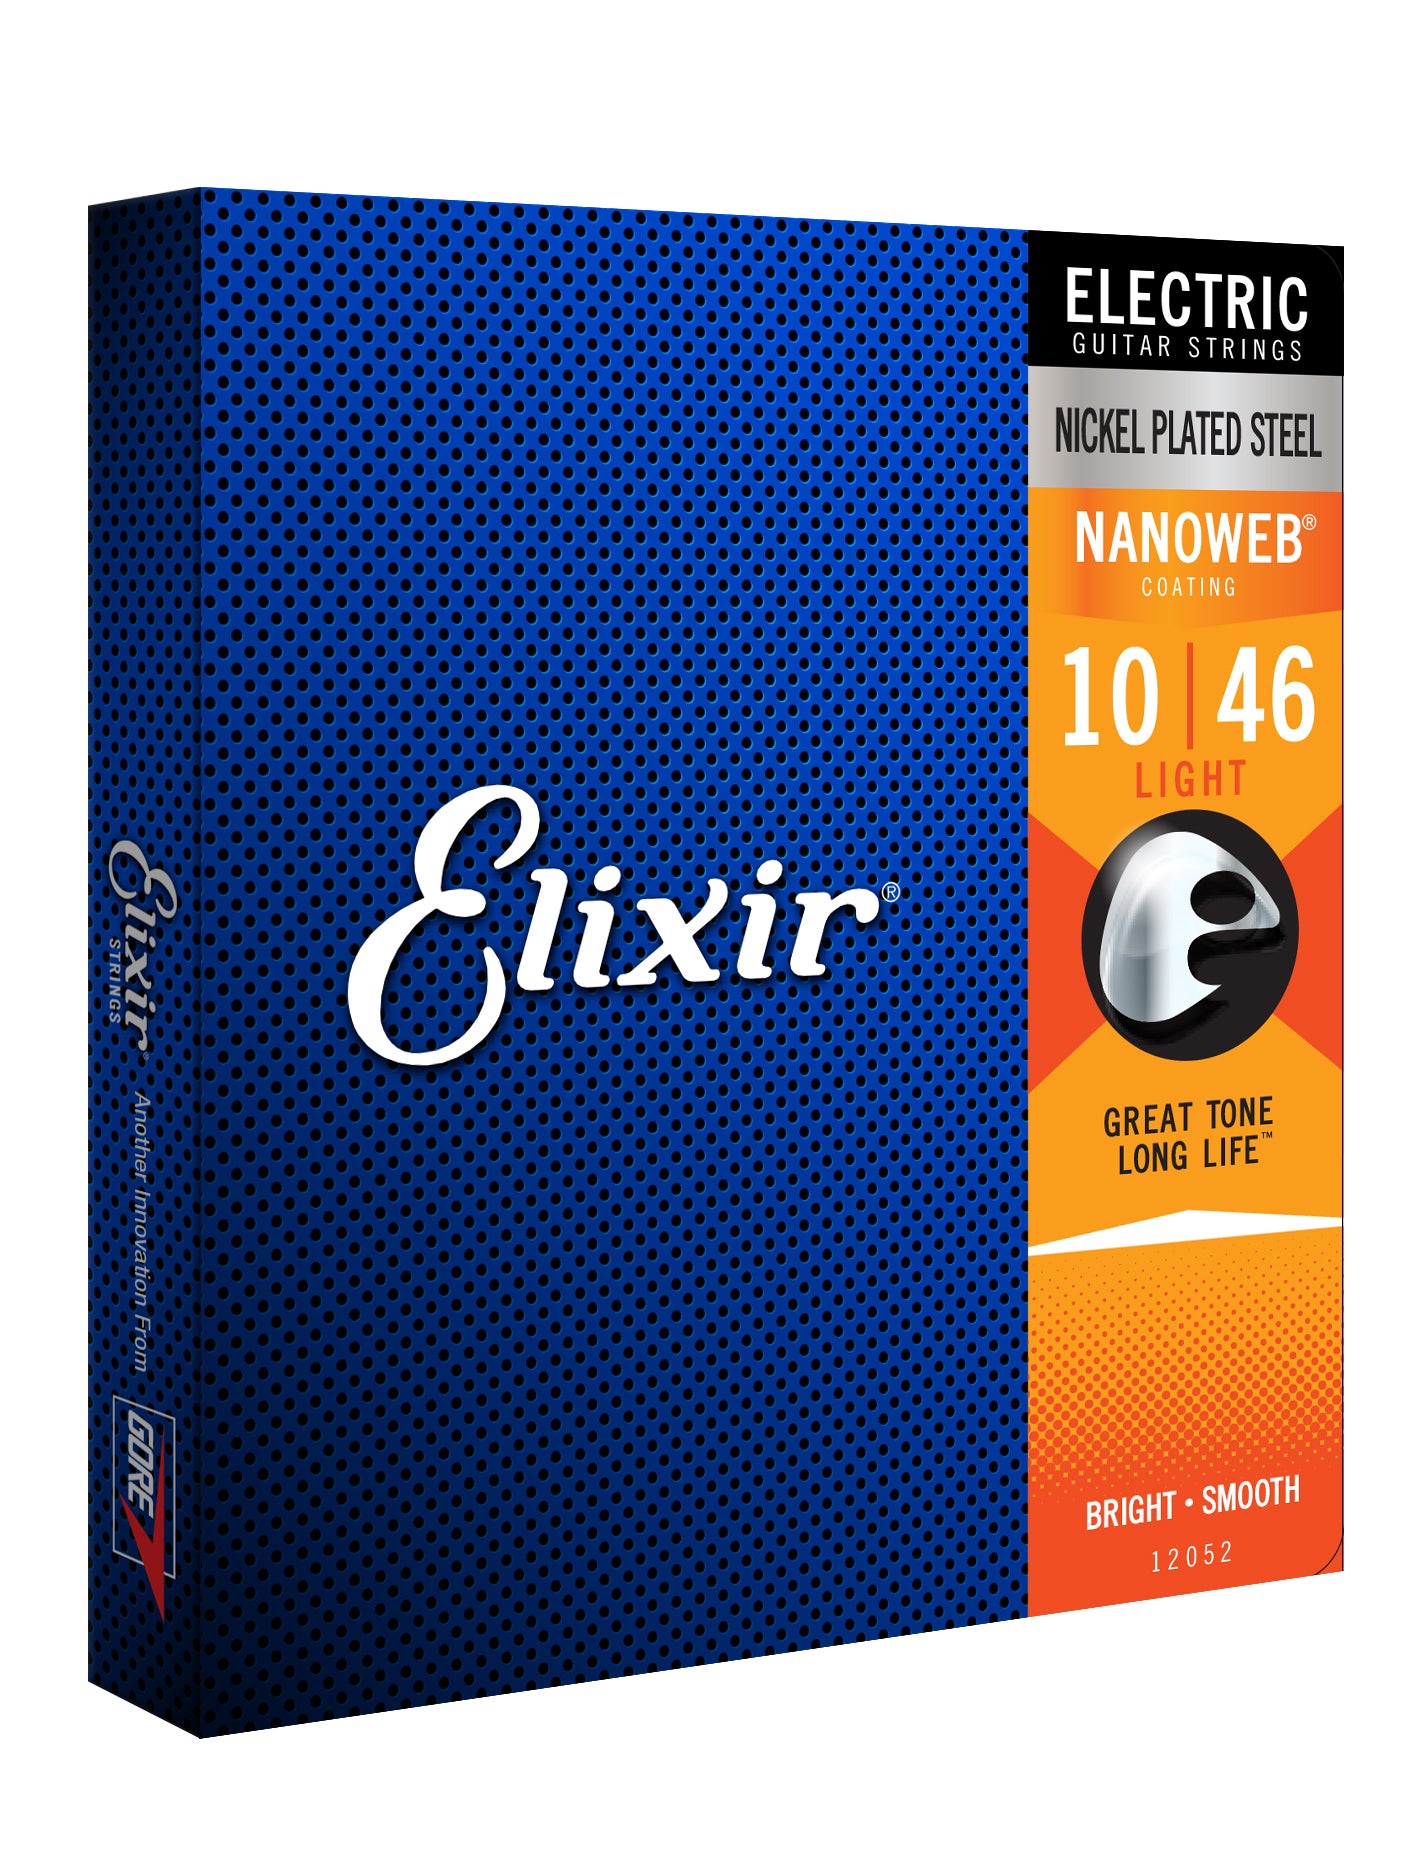 Elixir 12052 Light 10-46 Nanoweb Nickel Plated Steel Electric Guitar Strings